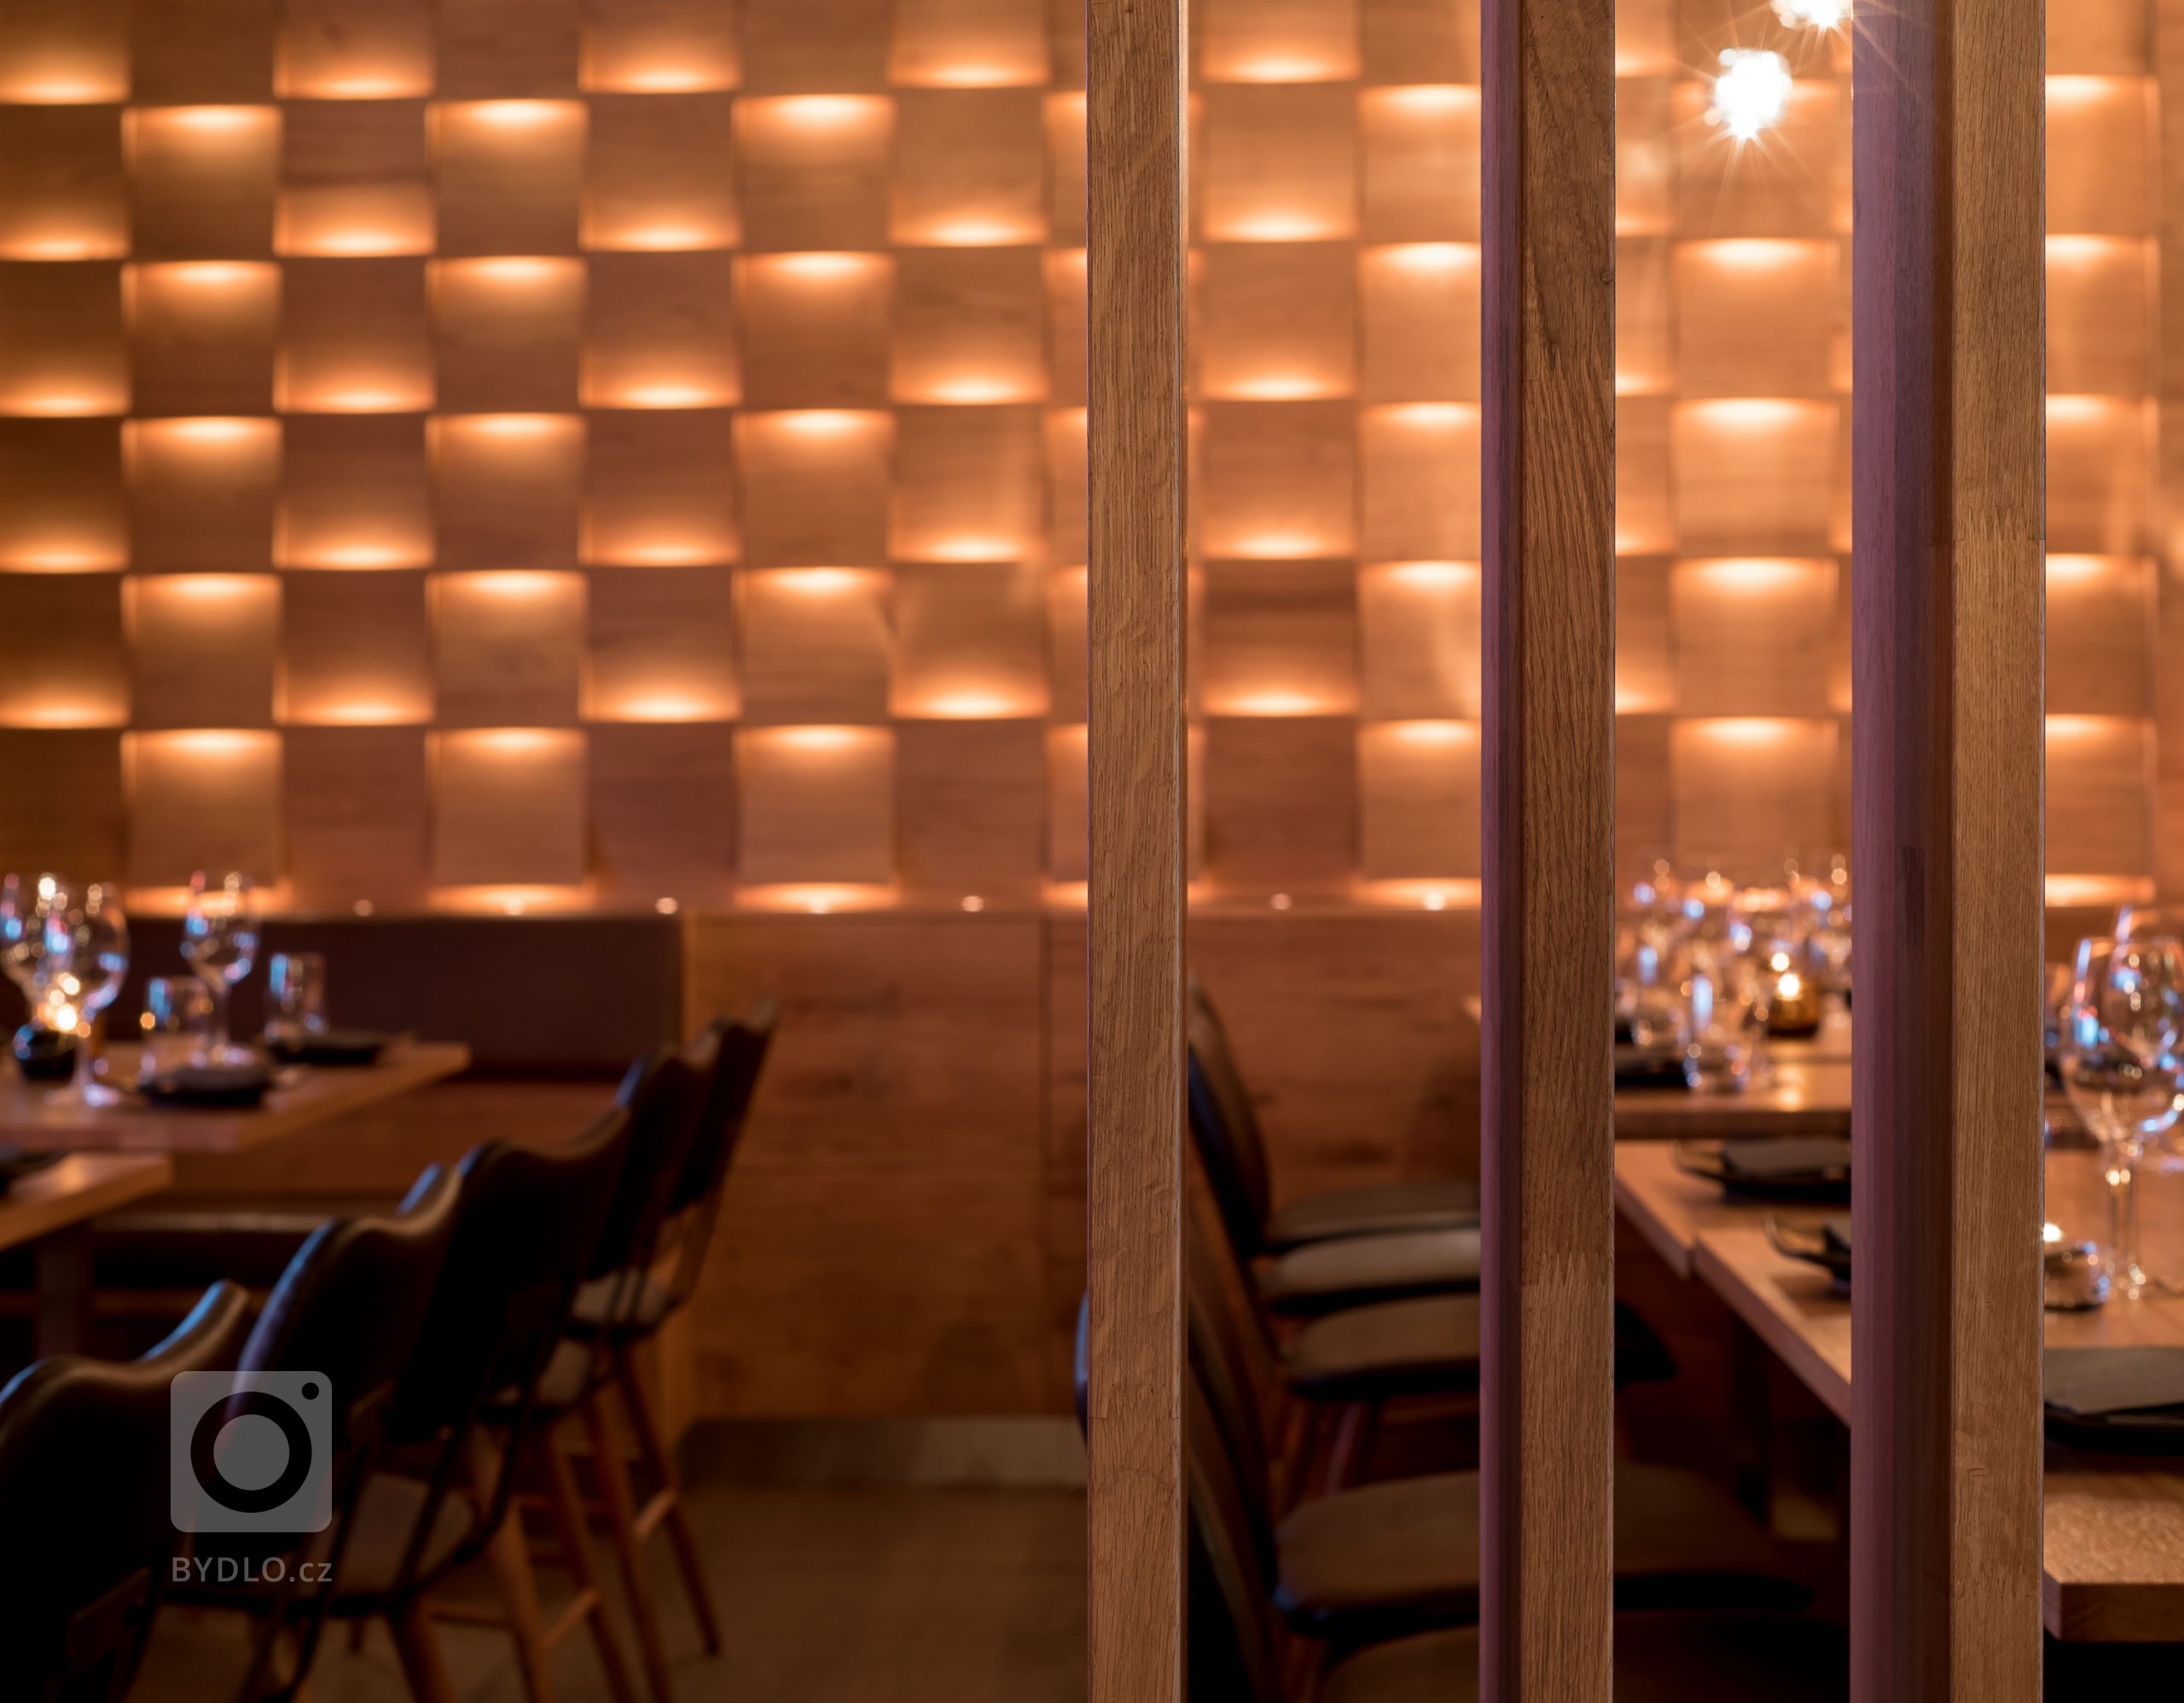 Restaurace Hinoki vítá návštěvníky příjemným moderním interiérem s&nbsp;důrazem na použití přírodních materiálů. Hlavní roli zde hraje světlo, které díky…